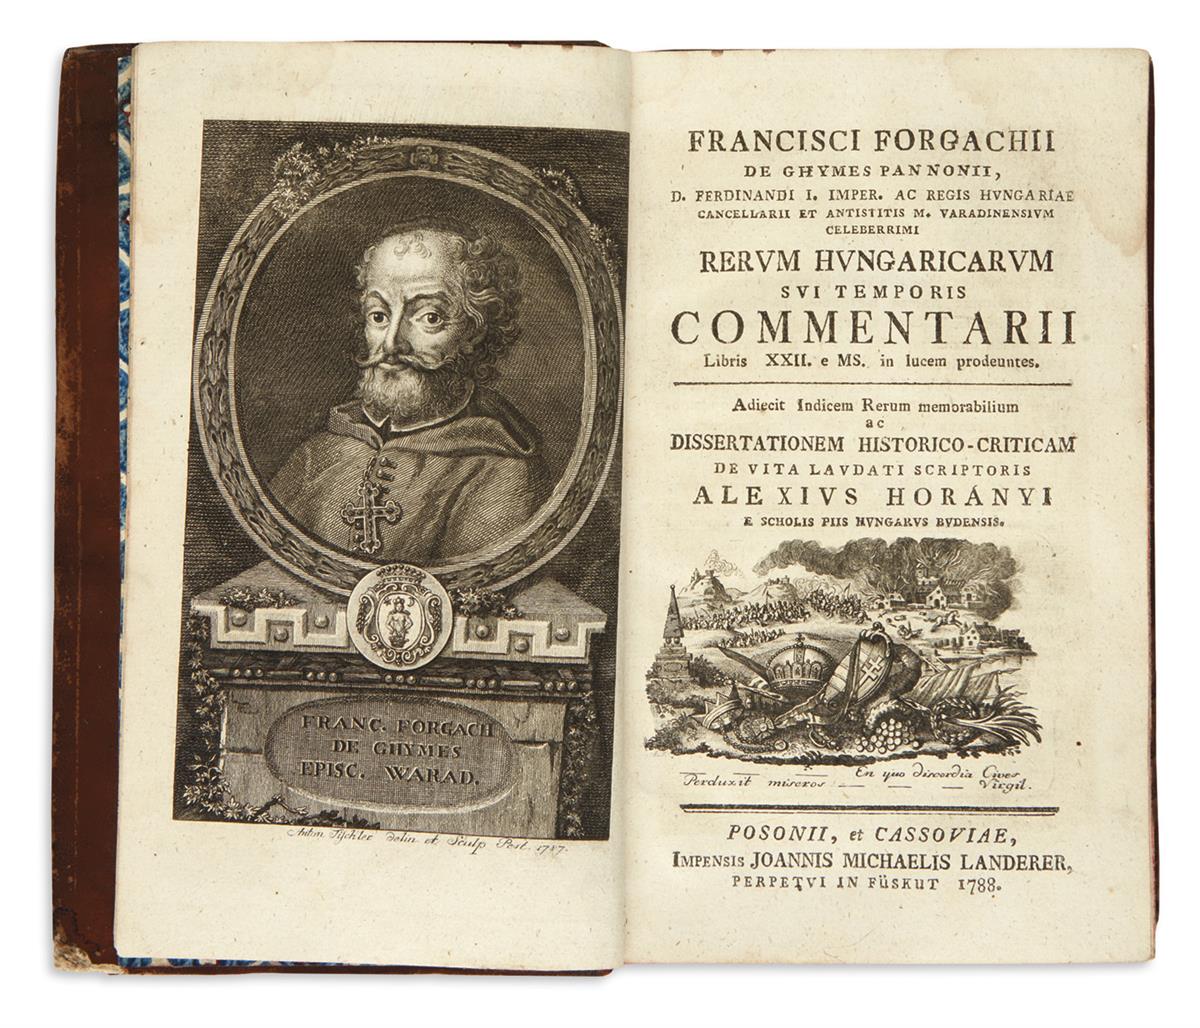 FORGACH, FERENC, Bishop of Varad. Rerum Hungaricarum sui temporis commentarii.  1788